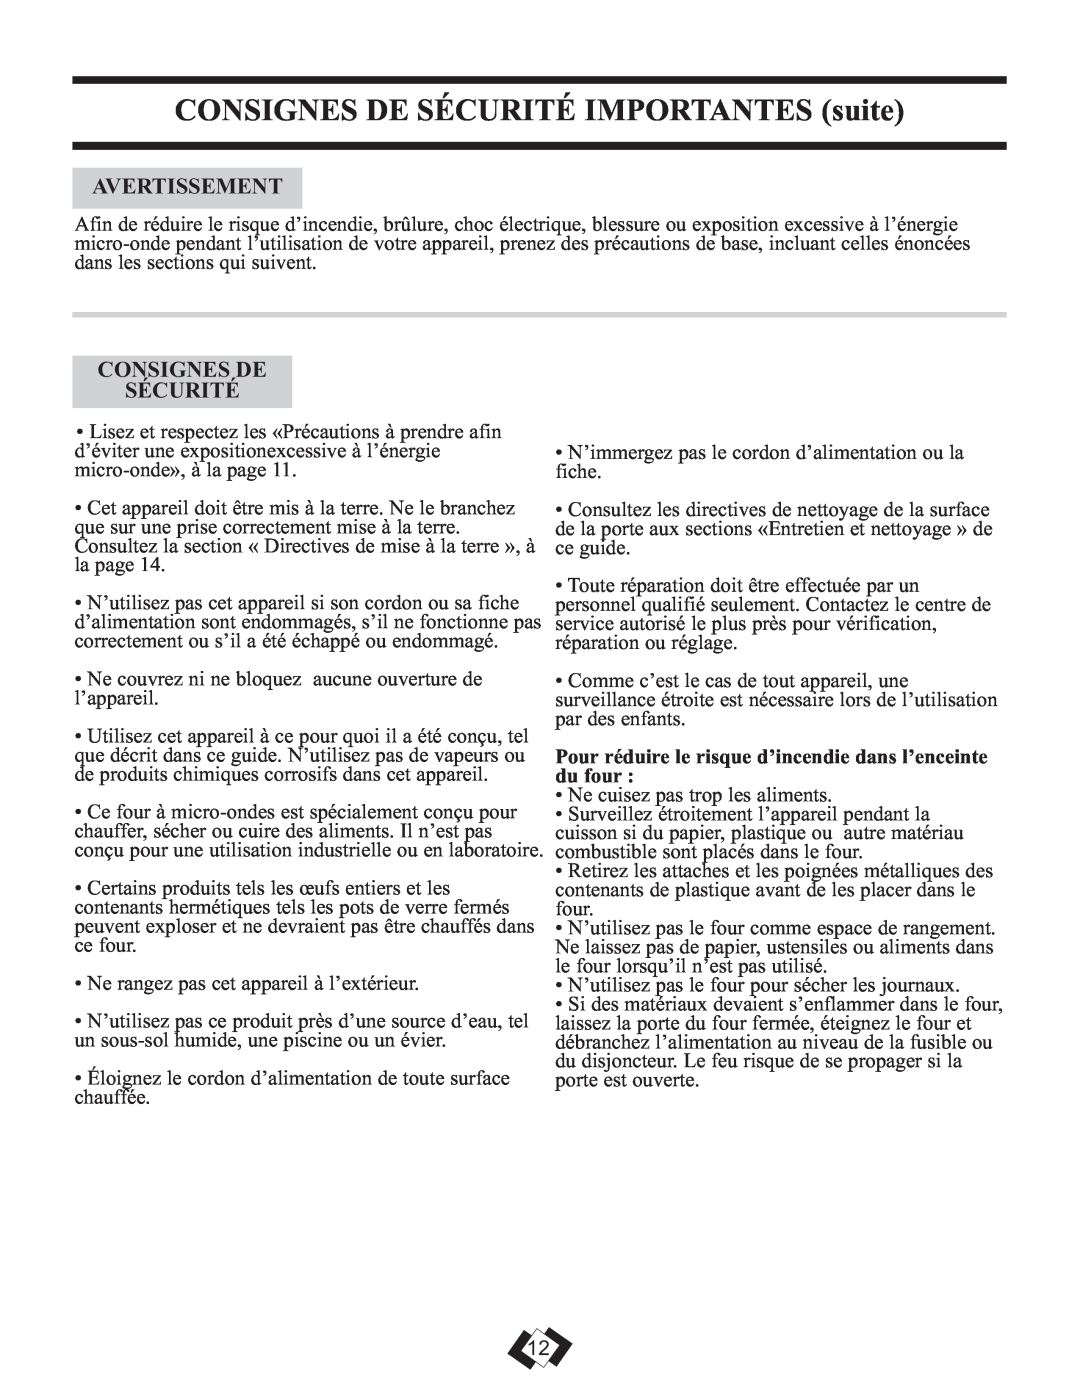 Sunbeam SBMW759W/BL warranty CONSIGNES DE SÉCURITÉ IMPORTANTES suite, Avertissement, Consignes De Sécurité 